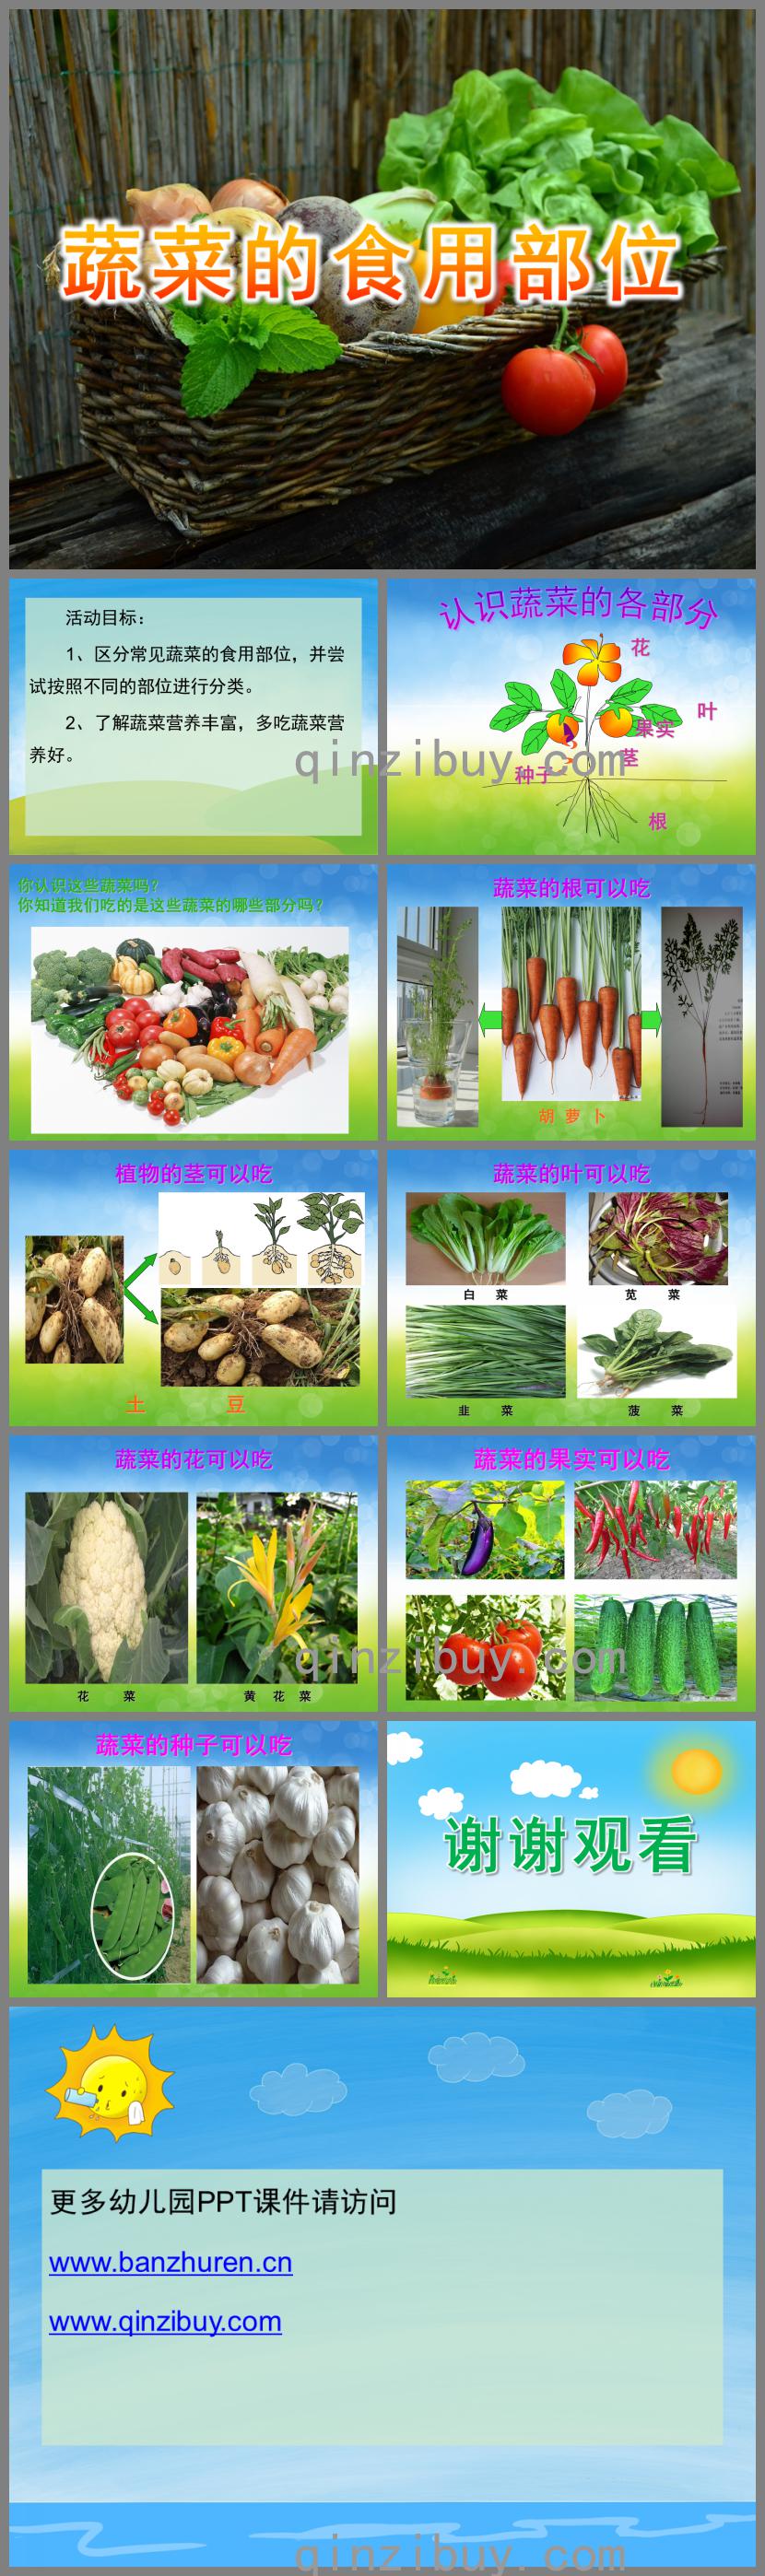 上皮内瘤样病变_高血压最怕的6样蔬菜_市场上有各种各样的蔬菜